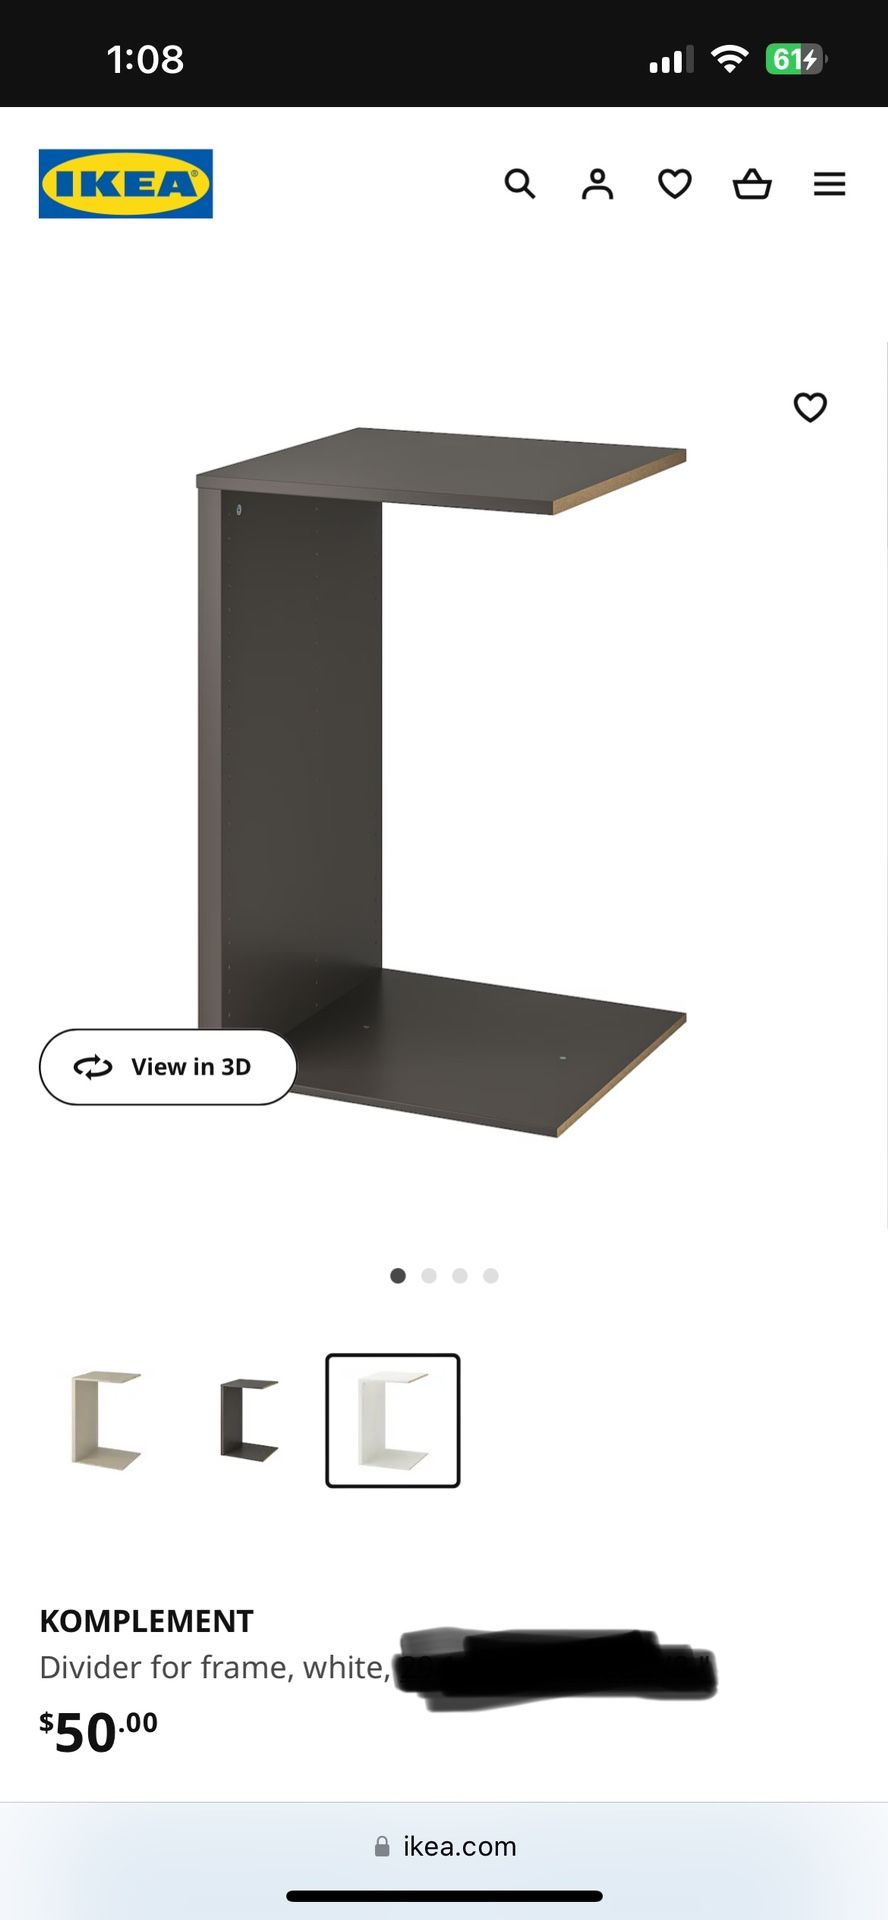 Ikea Pax Komplement Divider 39”x14”